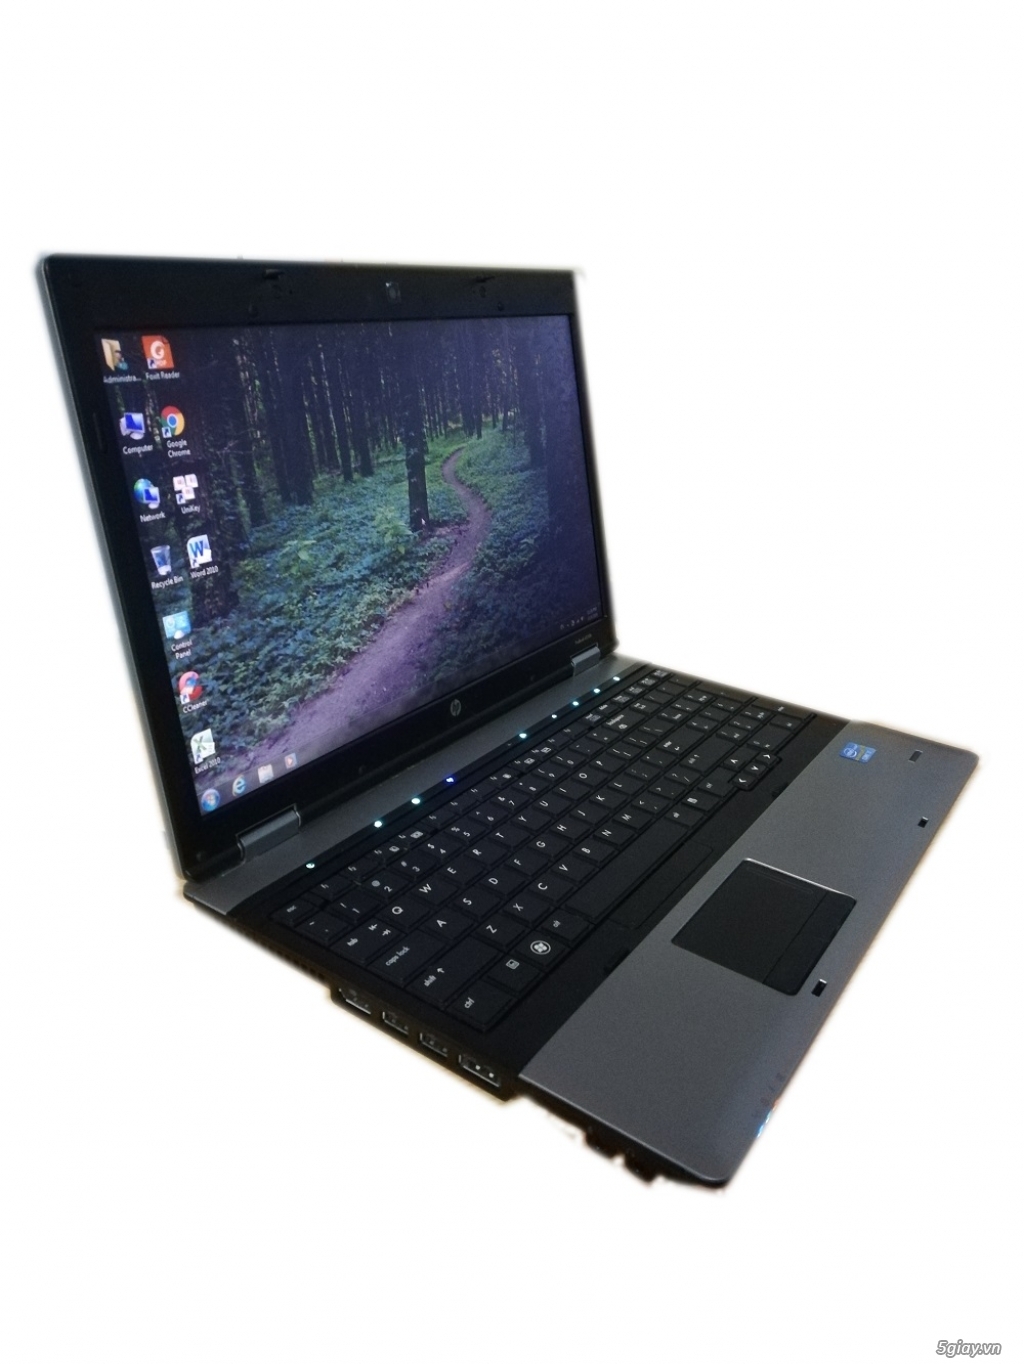 Laptop HP  Probook I7, ram 4g, hdd 250g